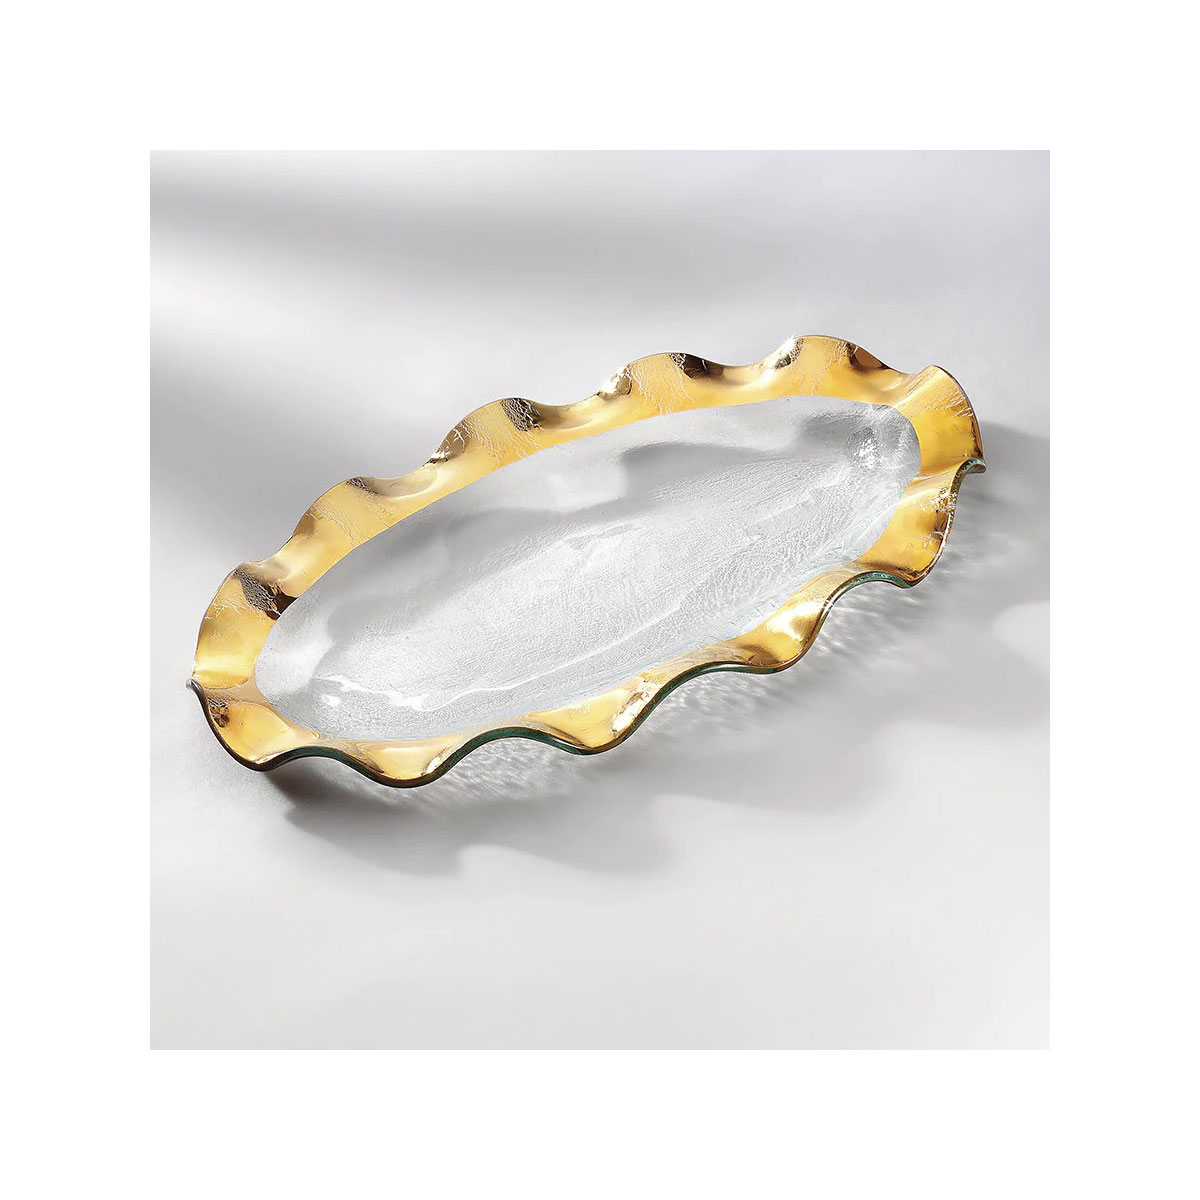 Annieglass Ruffle 14.5 X 9.5" Oval Platter